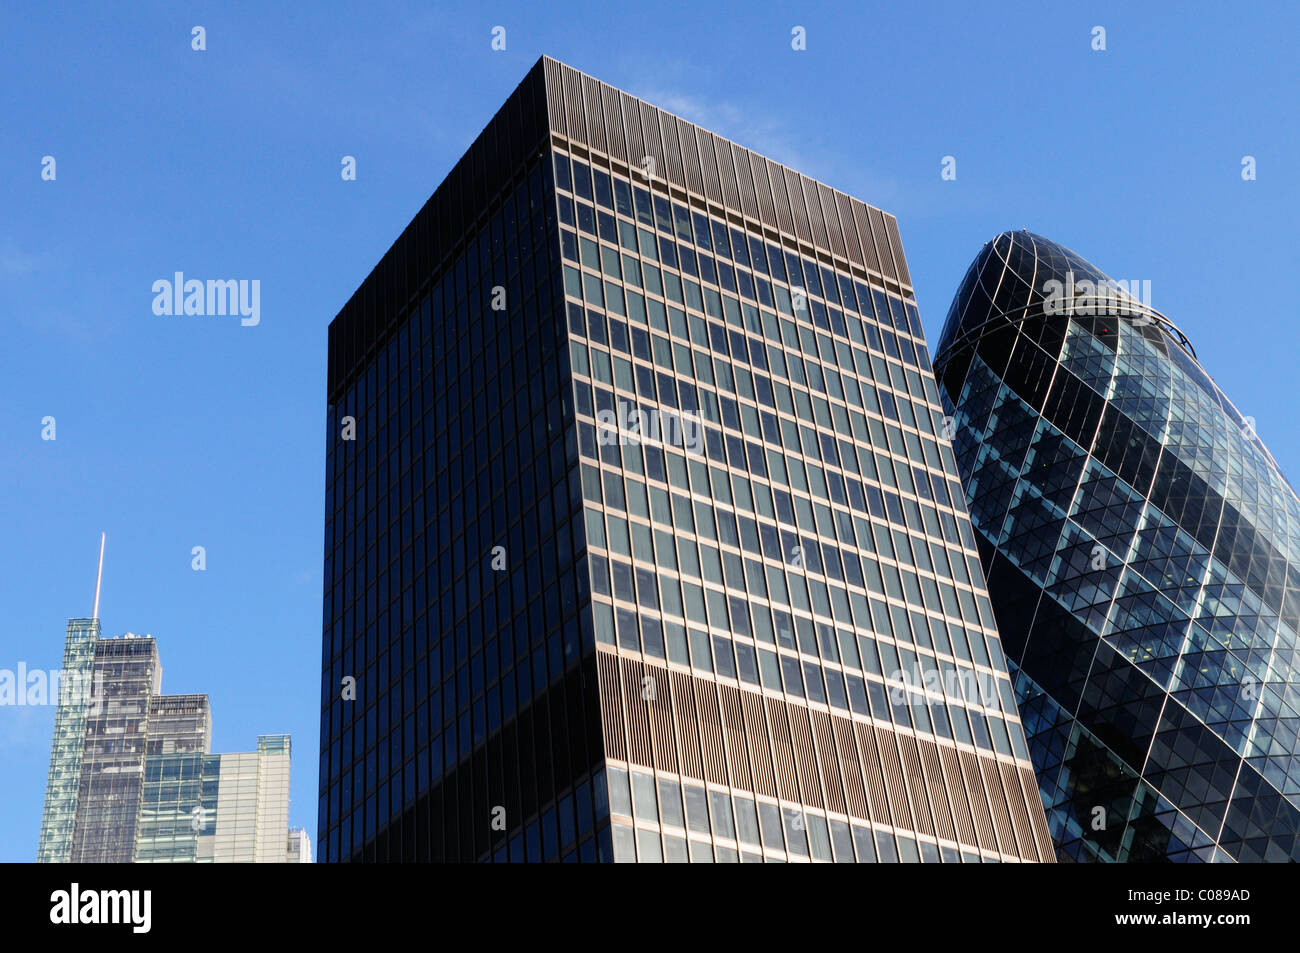 Résumé des détails architecturaux de ville de Londres des gratte-ciel, Heron Tower, Aviva et Bâtiment 30 St Mary Axe, London, England, UK Banque D'Images